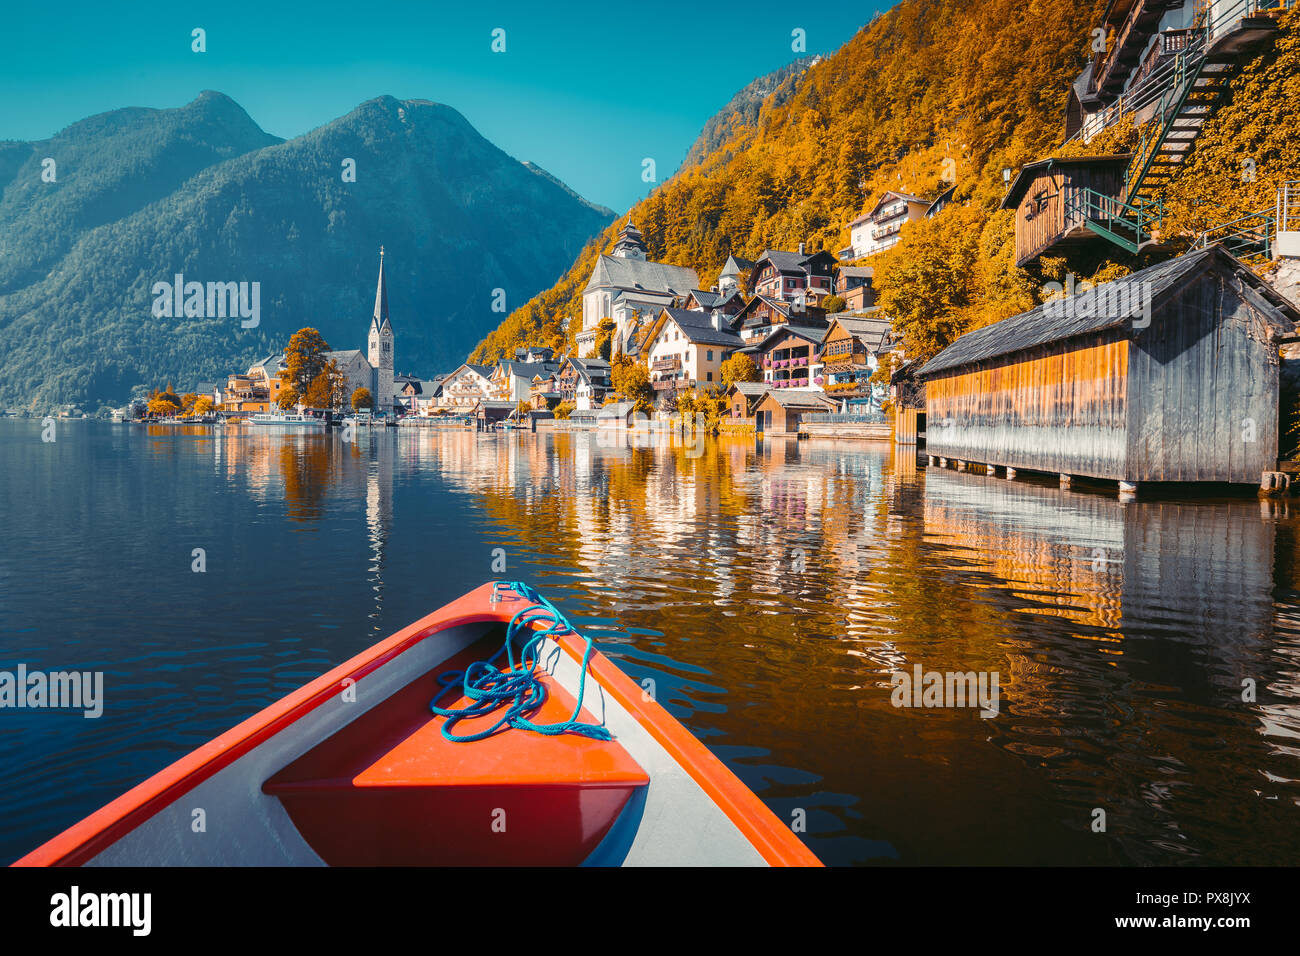 Visualizzazione classica del famoso Hallstatt Lakeside Town con tradizionale barca a remi Teal e Orange look, Austria Foto Stock